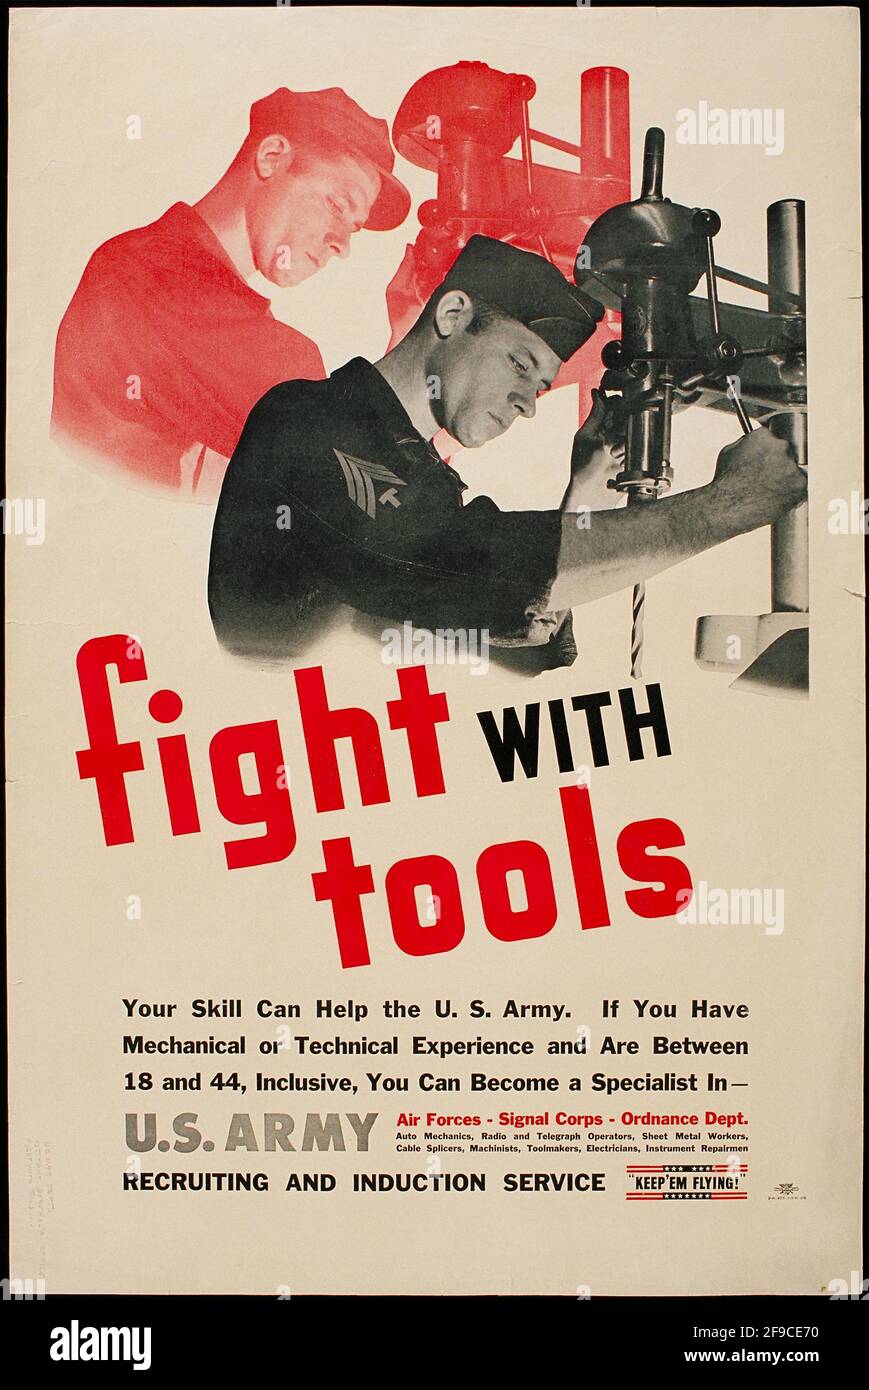 Ein amerikanisches Plakat aus dem 2. Weltkrieg, das die Menschen zur Arbeit mit dem auffordert Slogan „Fight with Tools“ Stockfoto